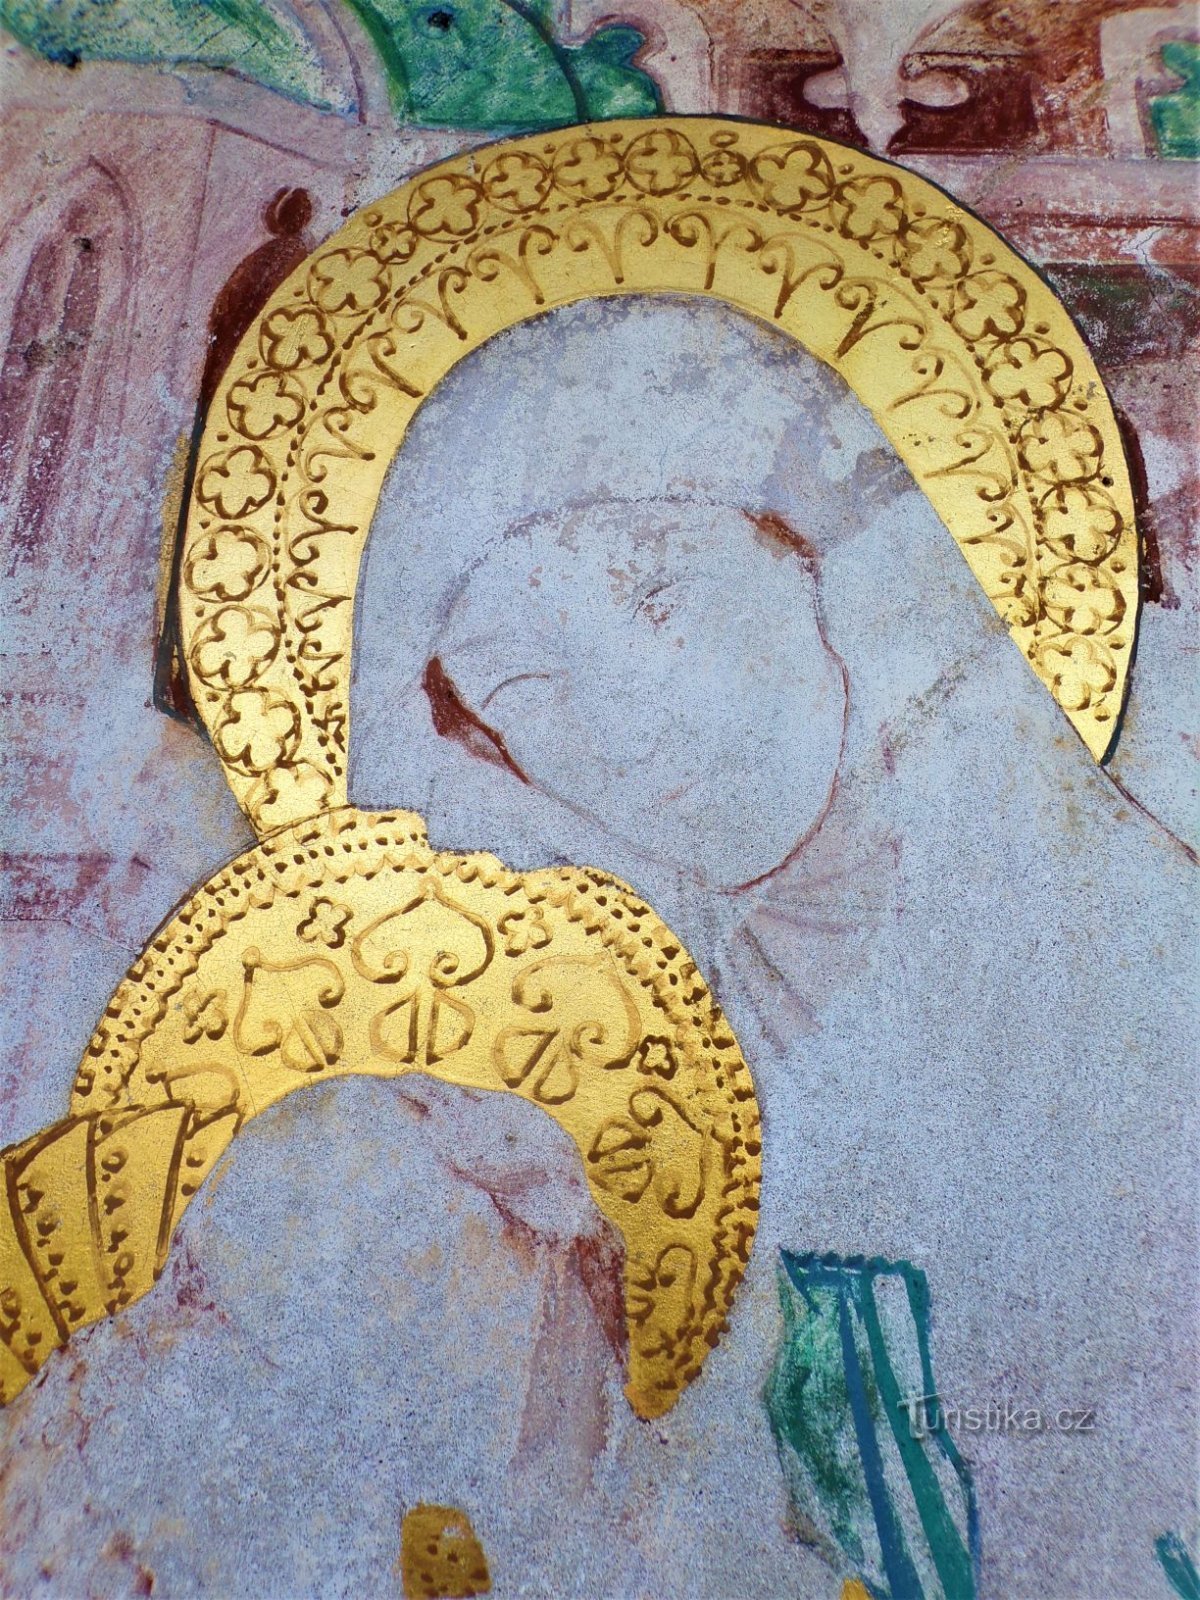 Szczegół św. Anny na obrazie w kaplicy św. Anny (Dobřenice, 8.5.2021 maja XNUMX)